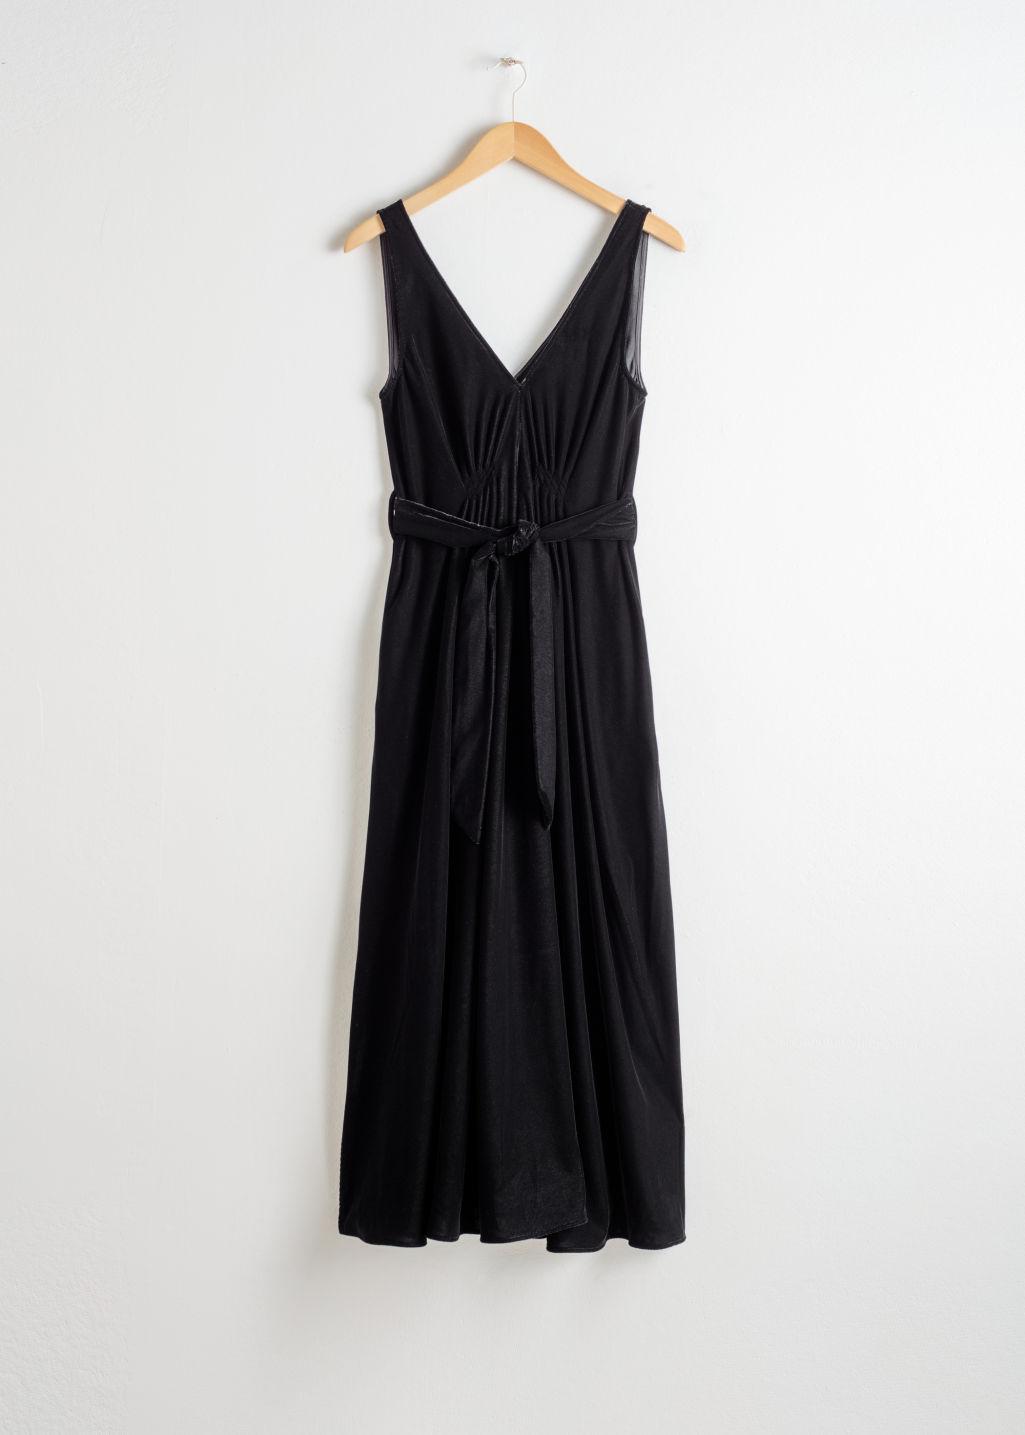 & Other Stories Belted Velvet Midi Dress in Black | Lyst